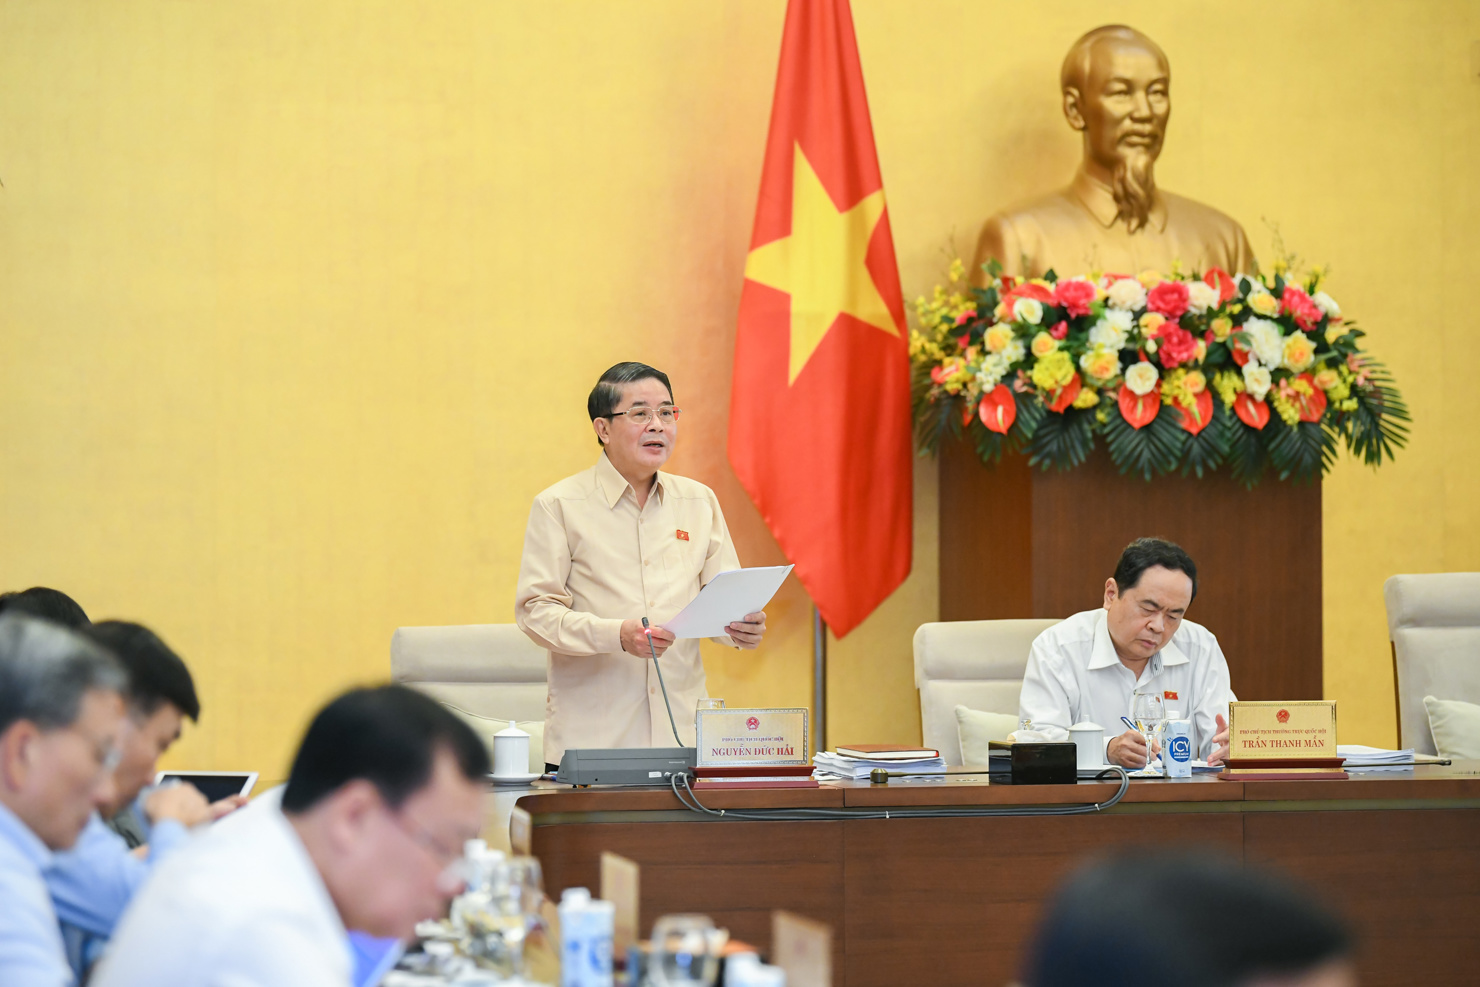 Phó Chủ tịch Quốc hội Nguyễn Đức Hải kết luận nội dung về tình hình thực hiện NSNN năm 2022, dự toán NSNN và phương án phân bổ NSNN trung ương năm 2023 tại Phiên họp thứ 16.